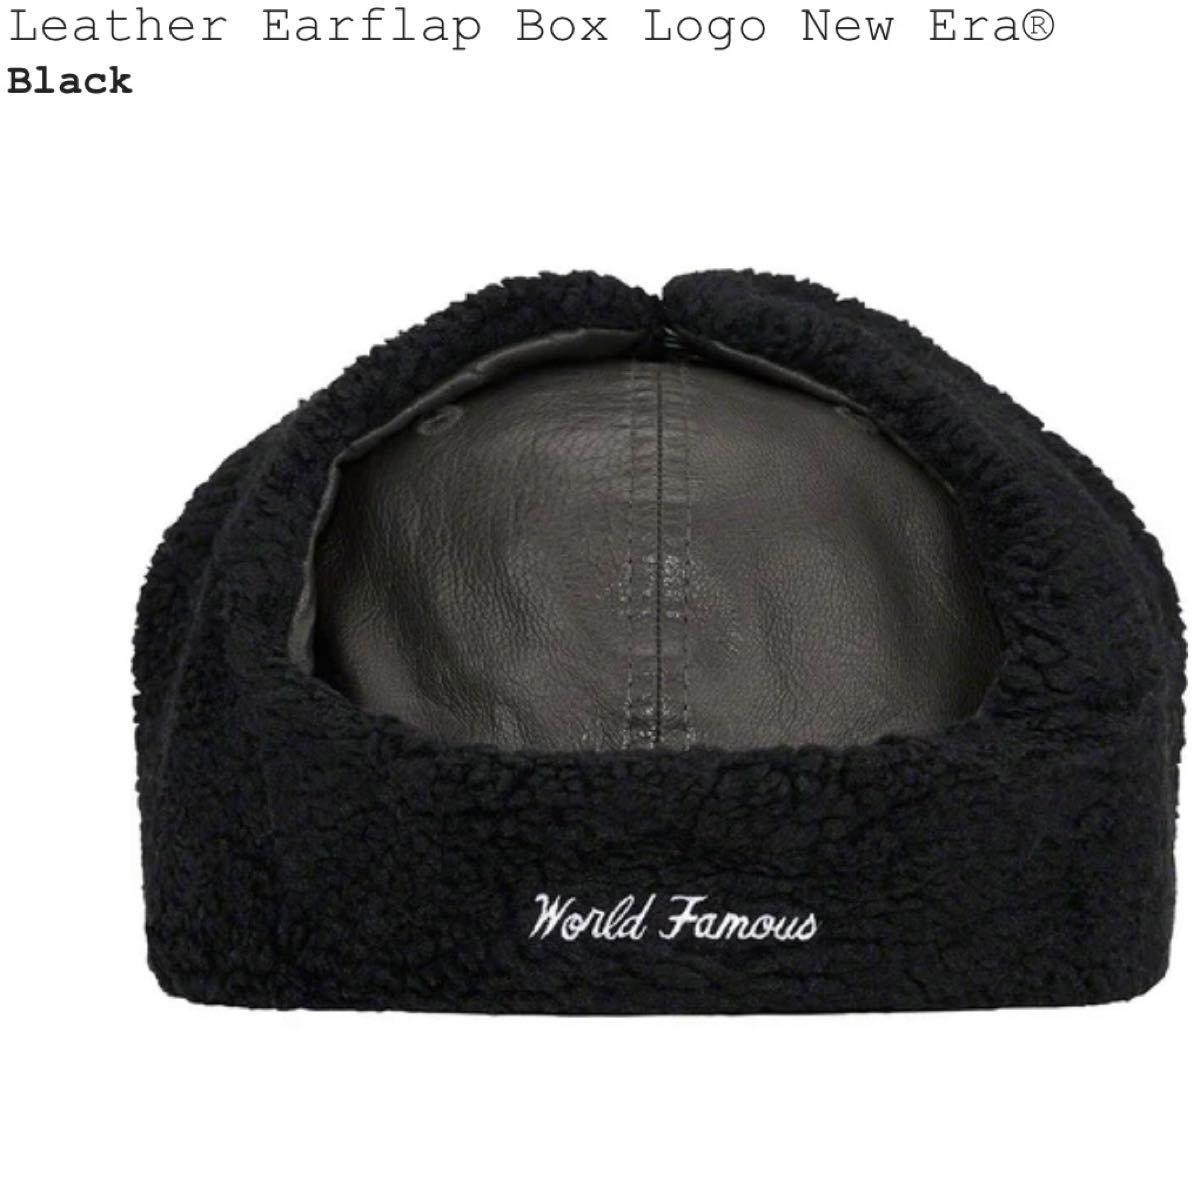 【ブラック 7-1/2】Supreme Leather Earflap Box Logo New Era シュプリーム ニューエラ